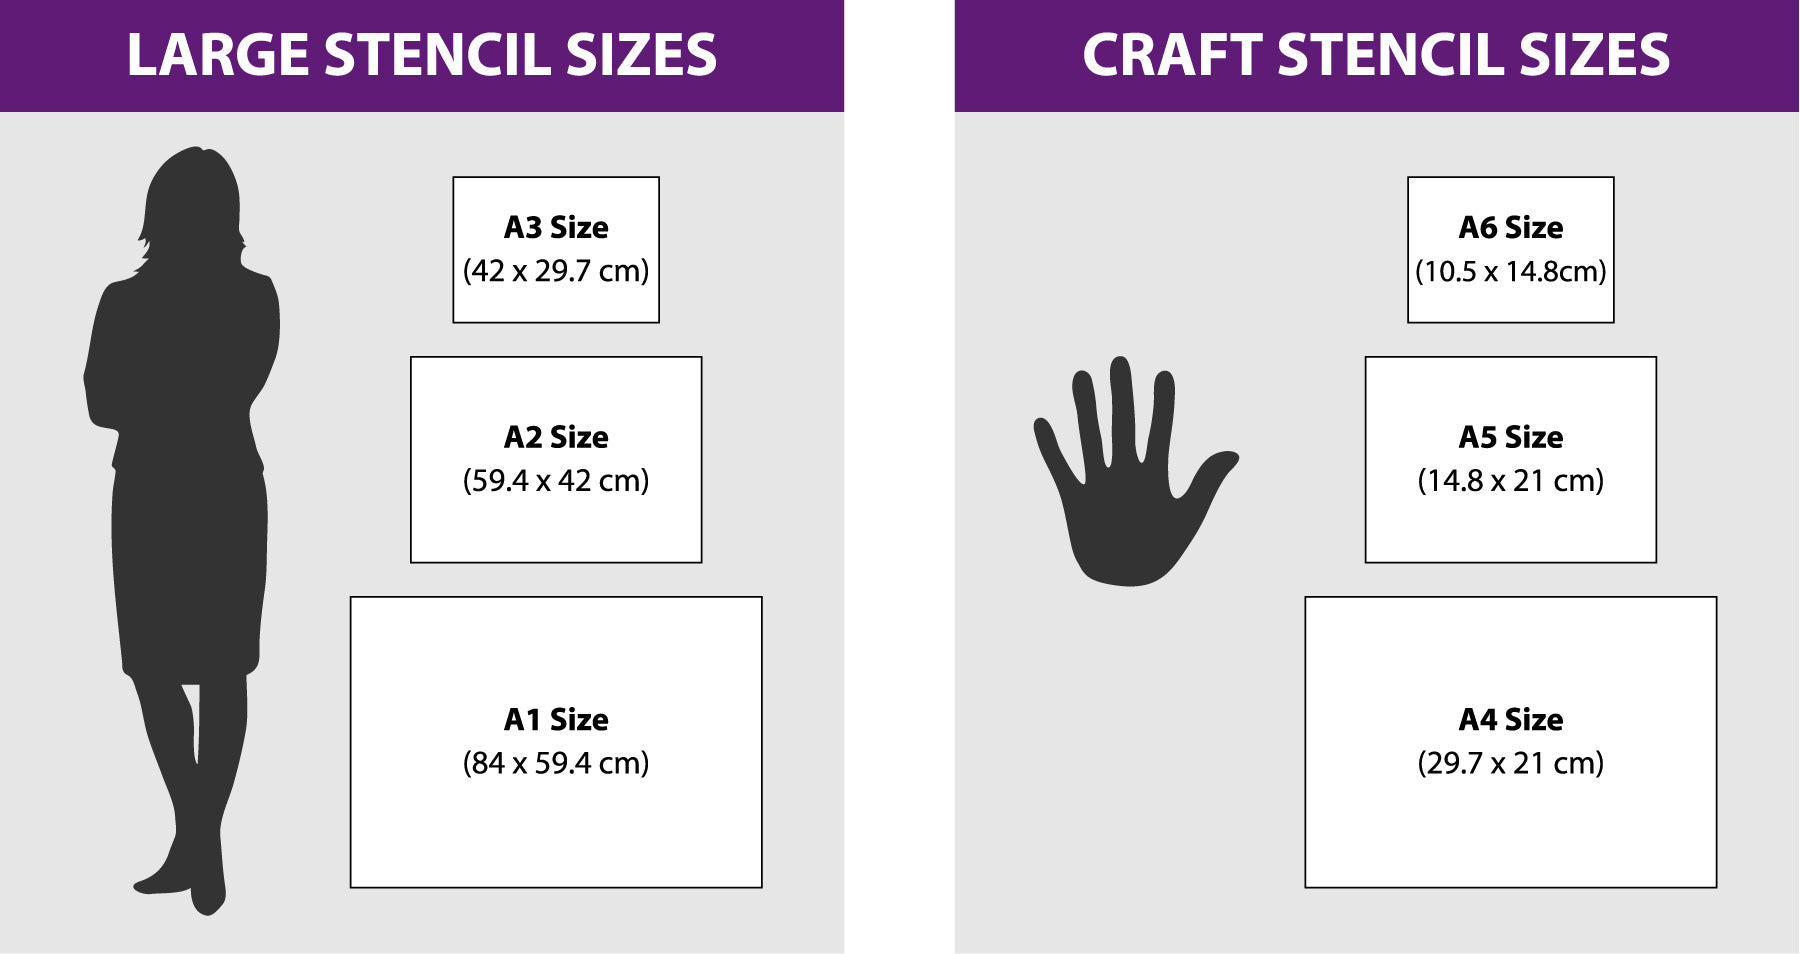 CraftStar Help Page - Stencil Size Guide